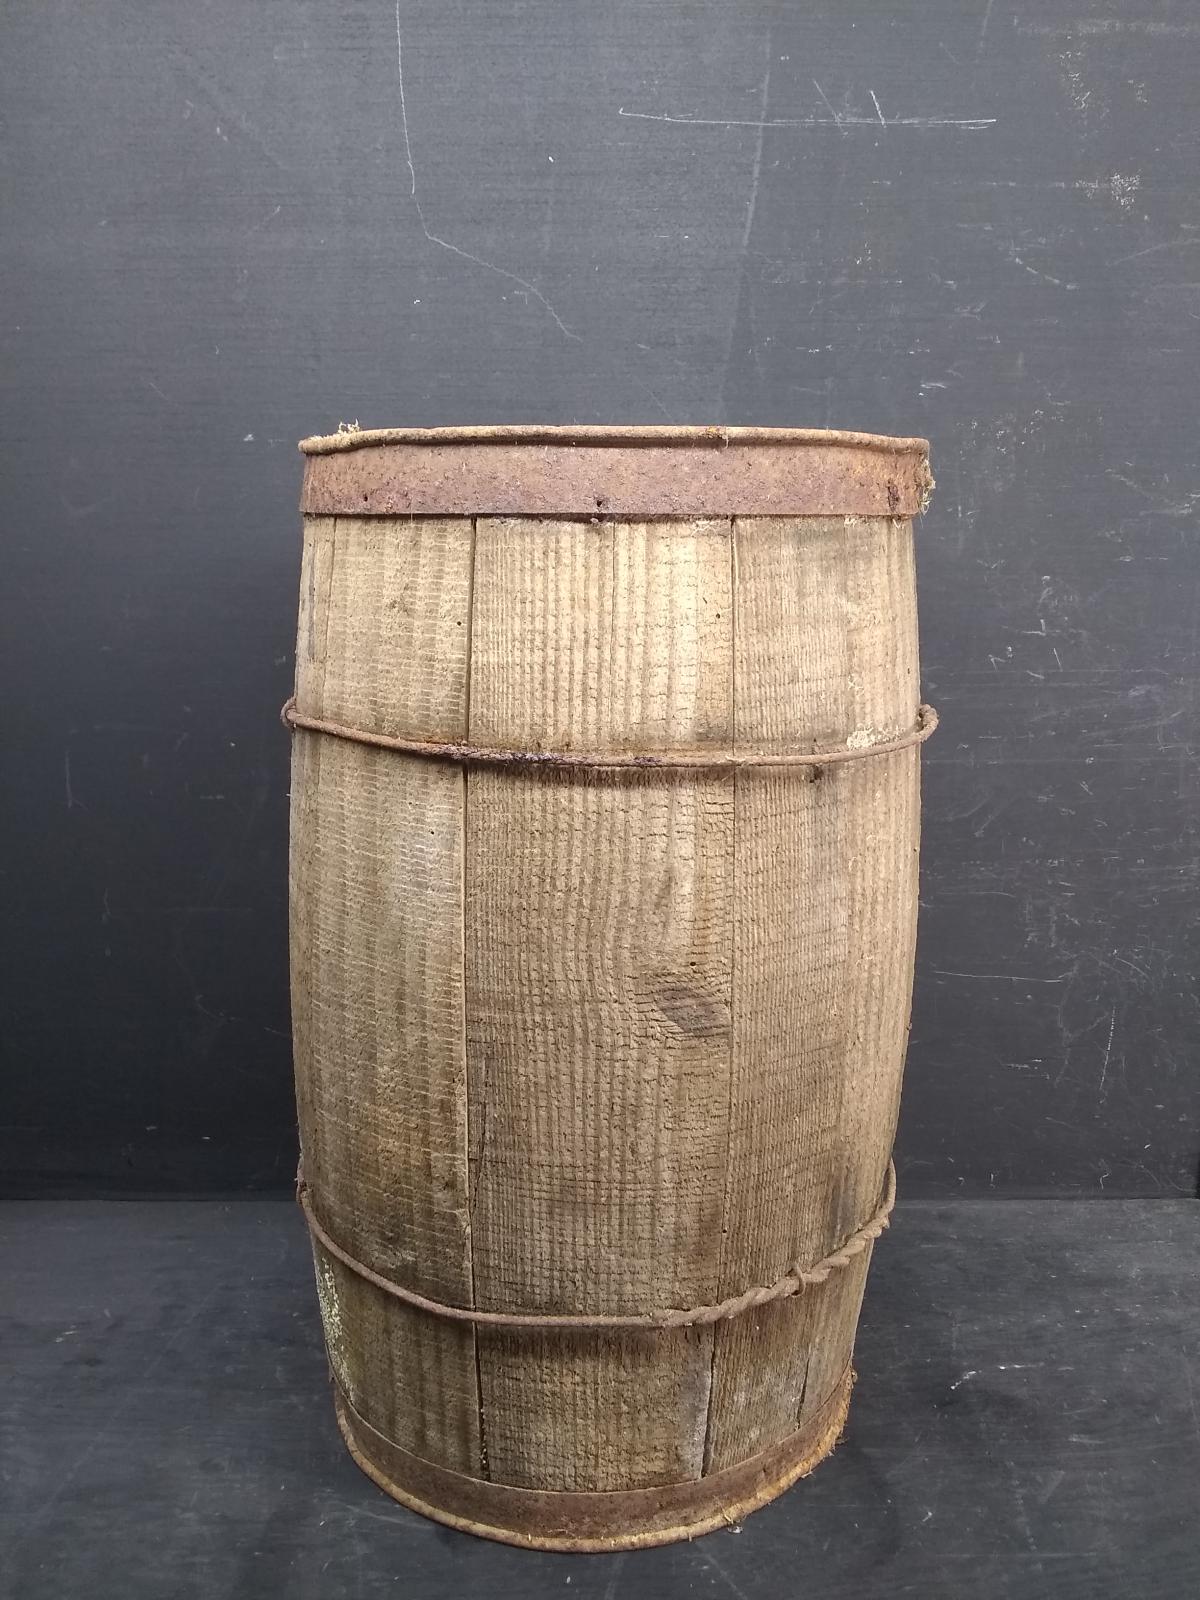 Vintage primitive nail keg barrel - general for sale - by owner - craigslist